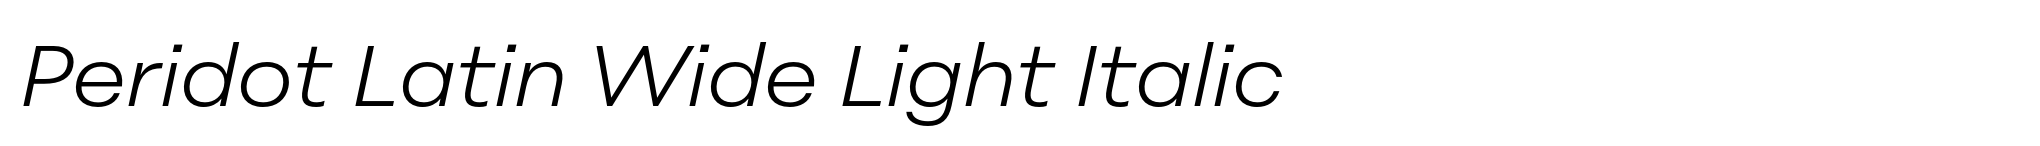 Peridot Latin Wide Light Italic image